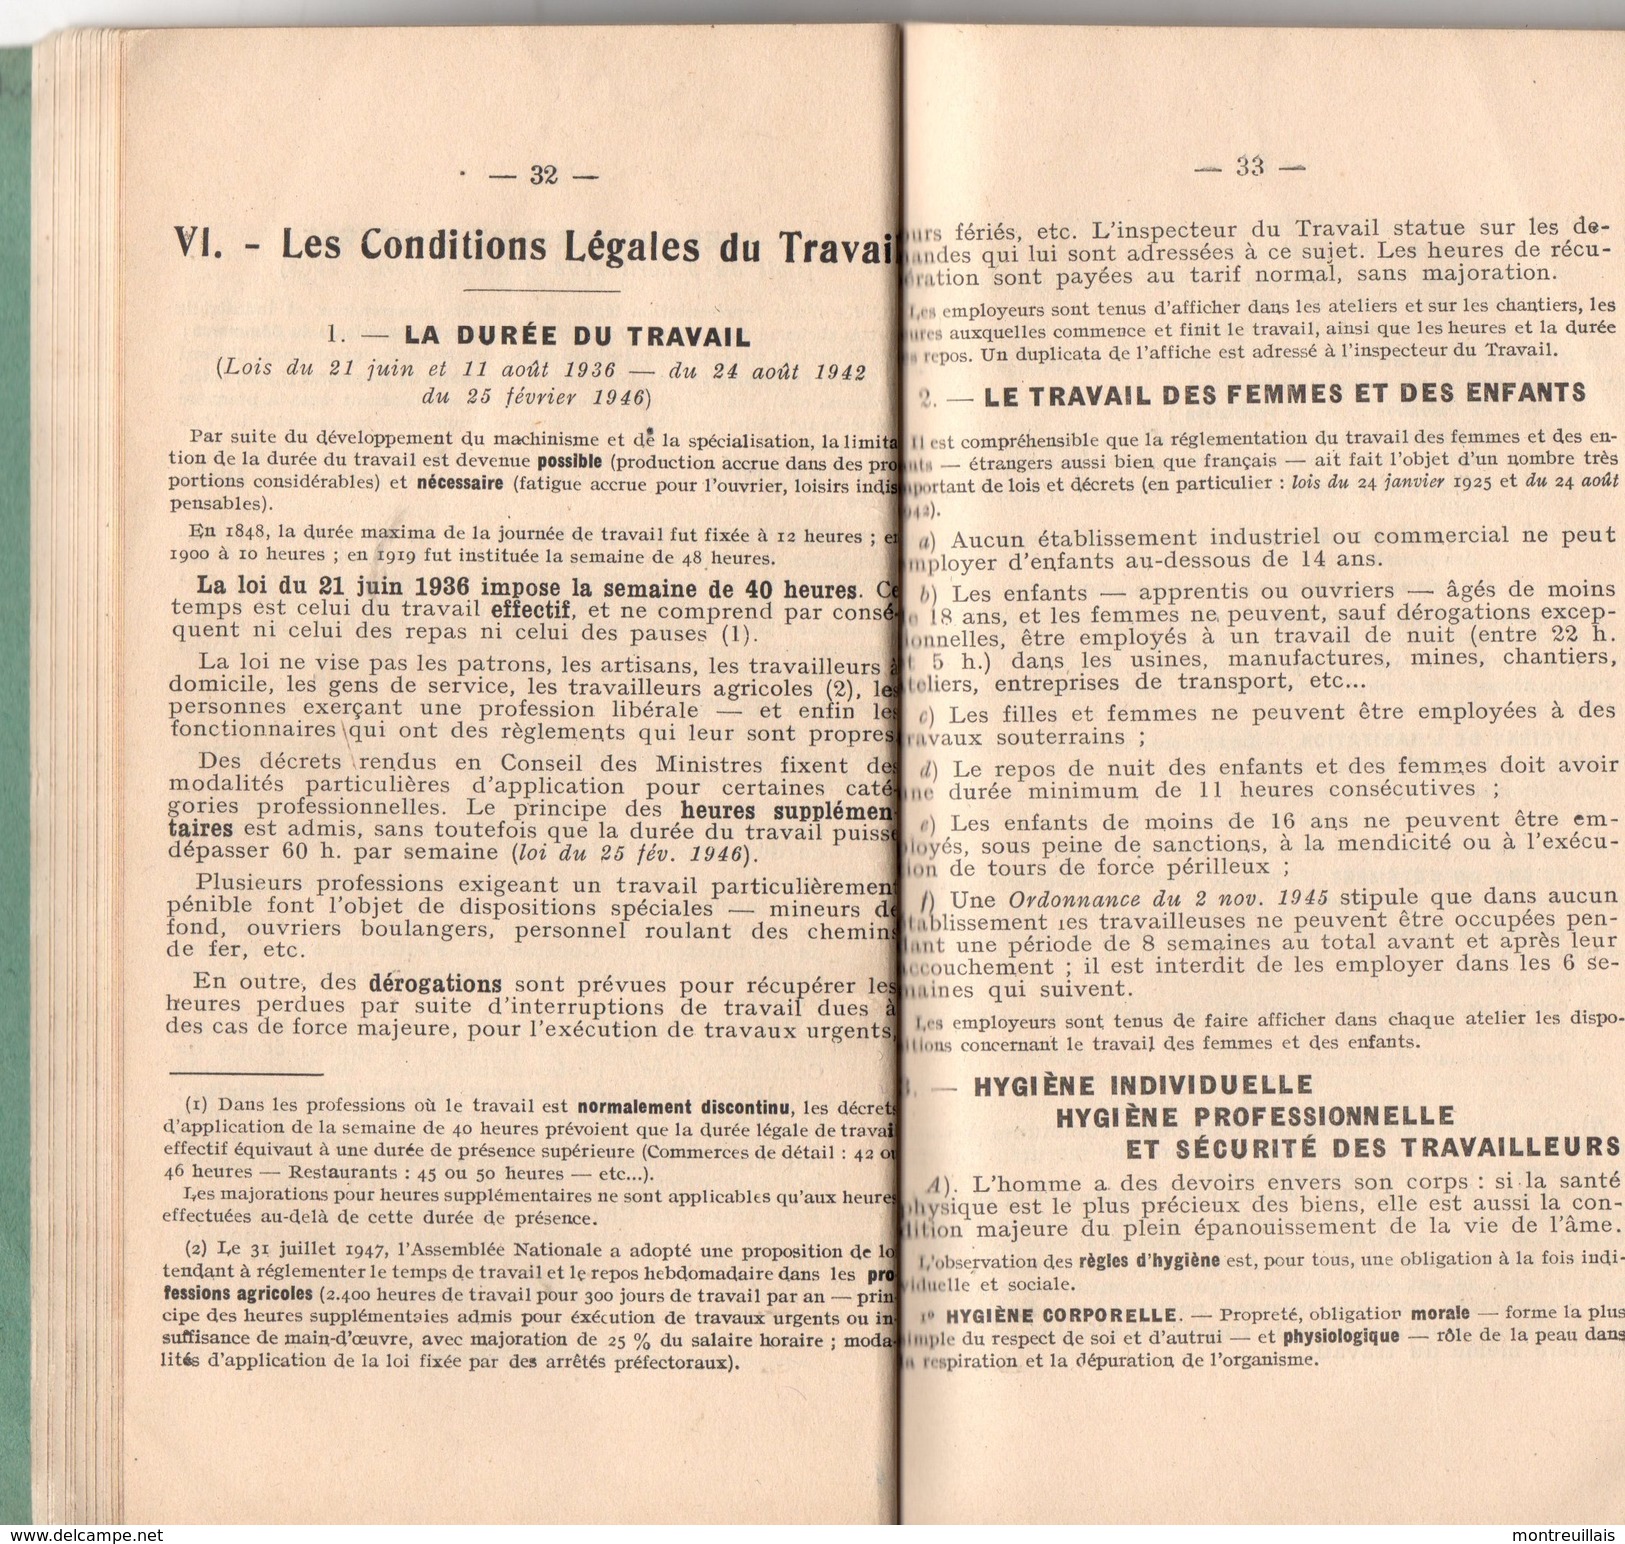 Petit Fasicule De 138 Pages, De 1947, Précis De Législation Du Travail Et D'instruction Civique Par NEGRE - Derecho